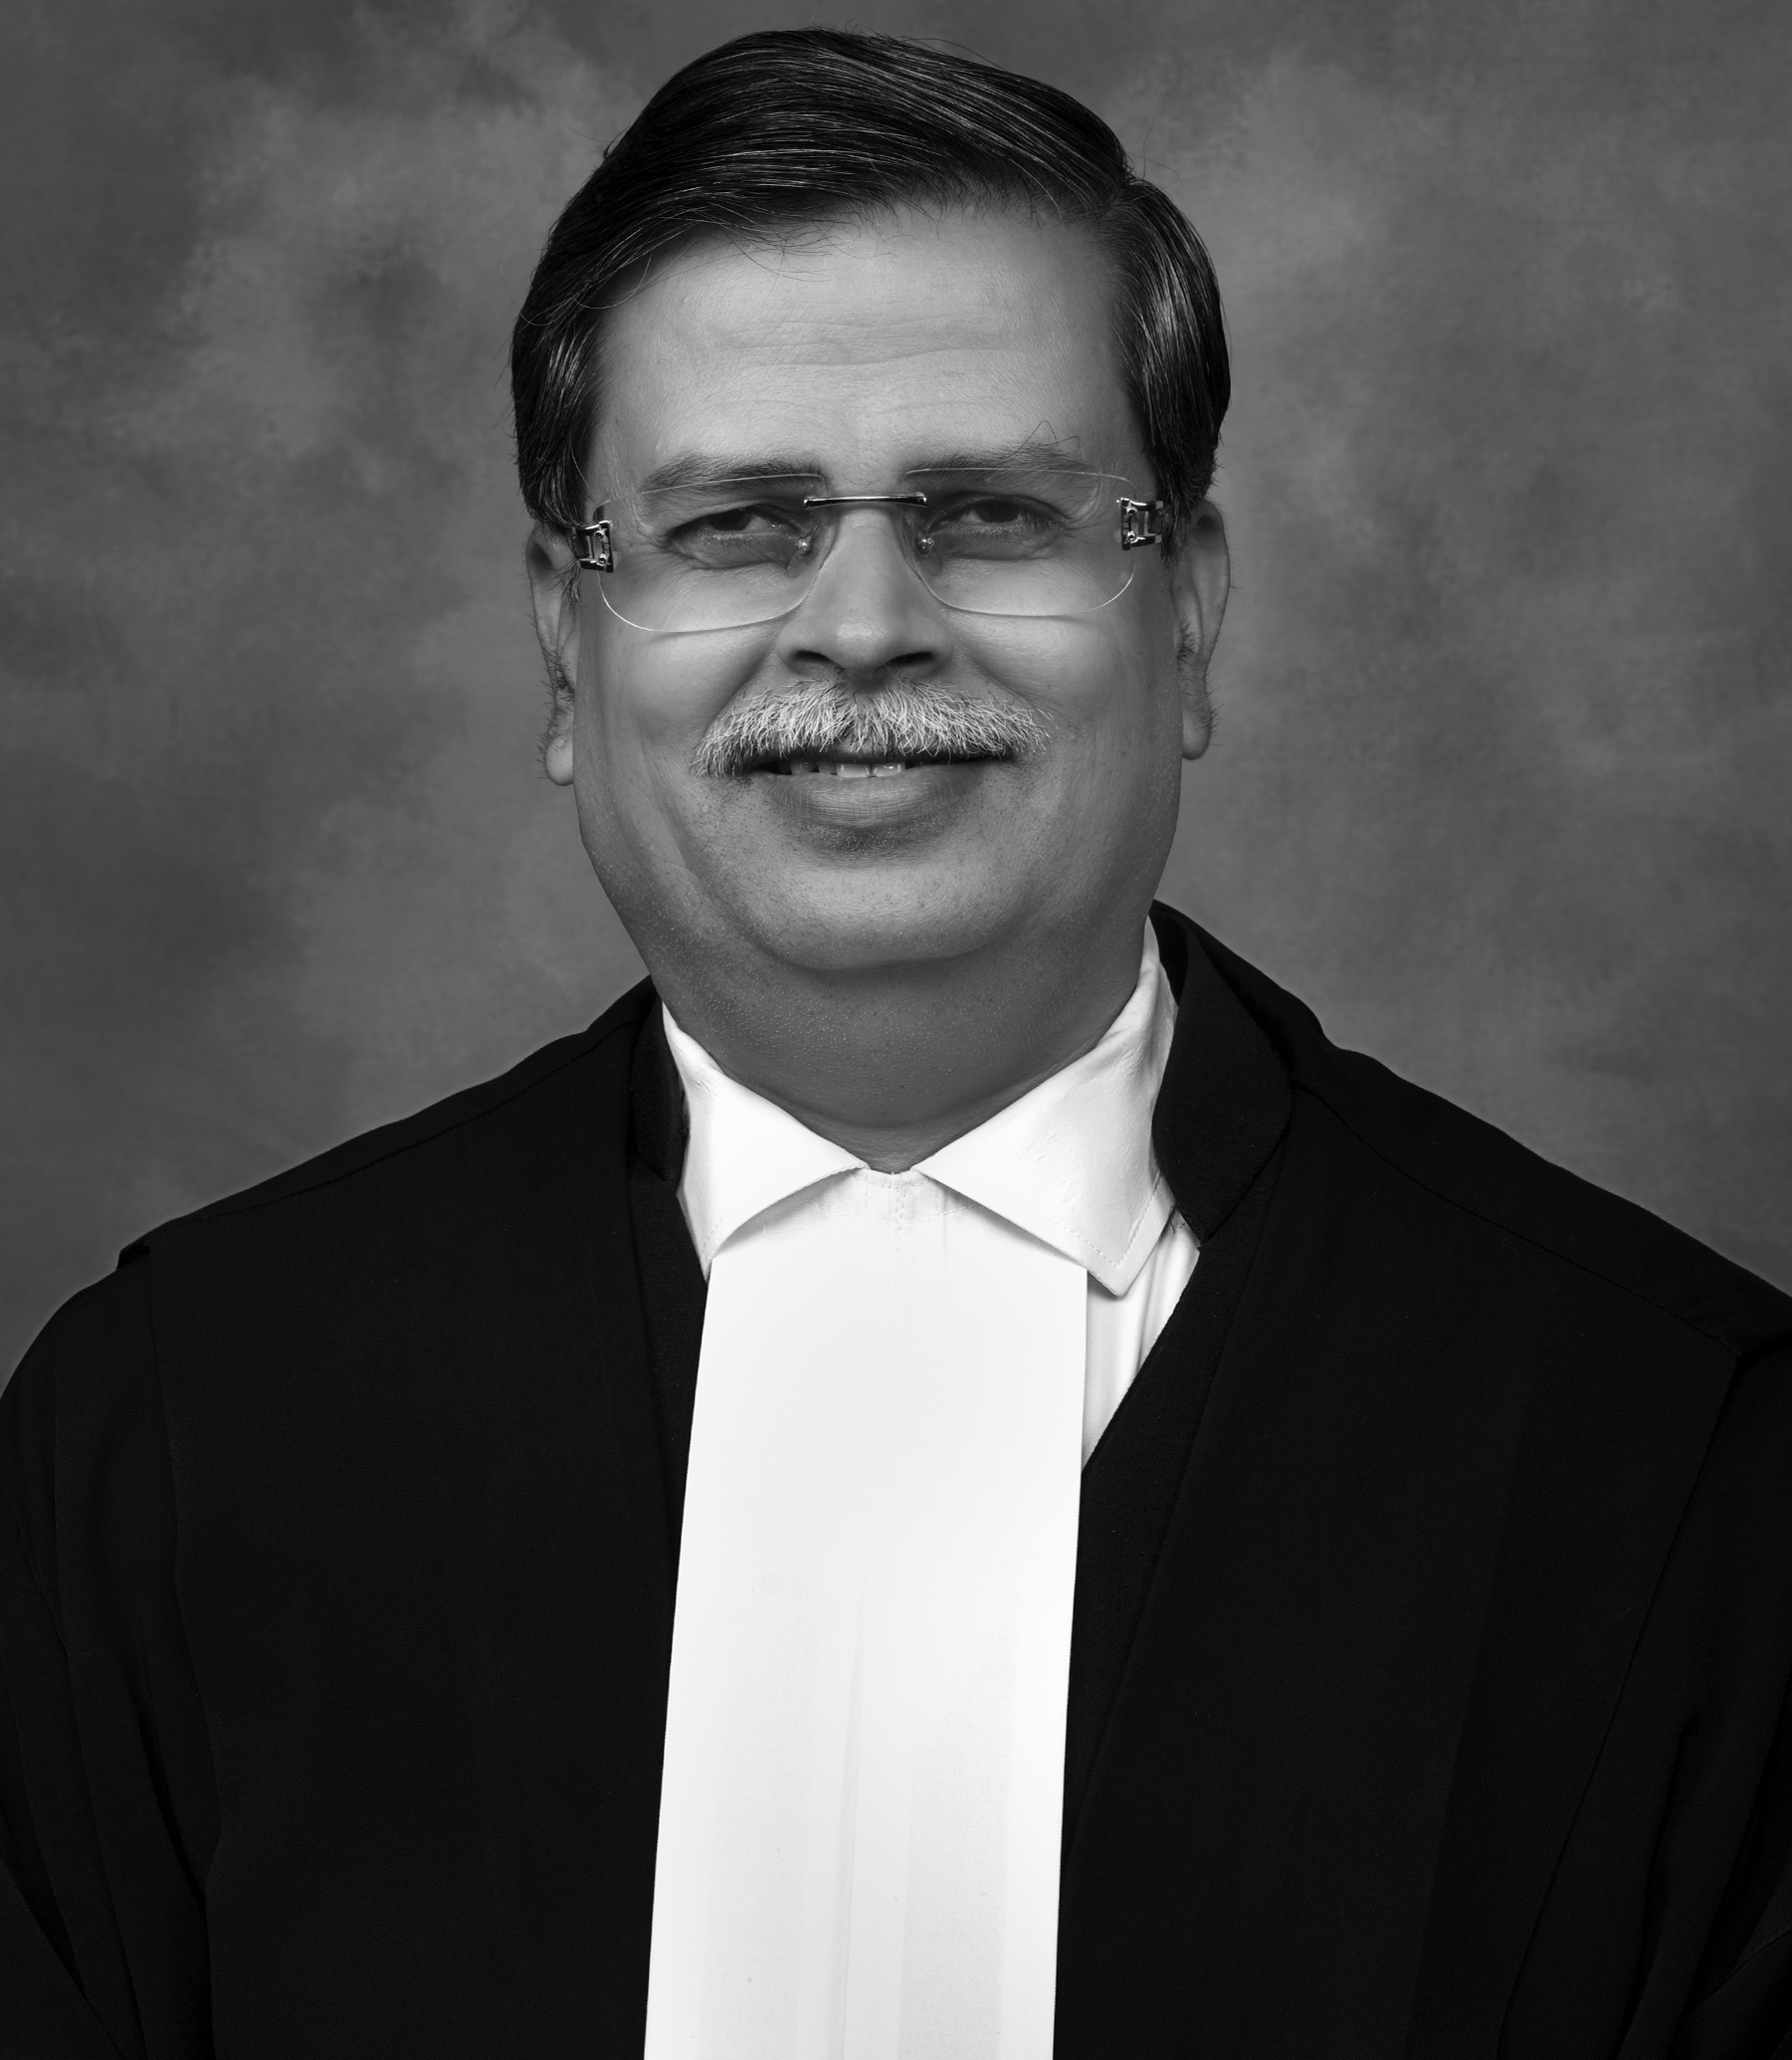 Justice Madhav J. Jamdar